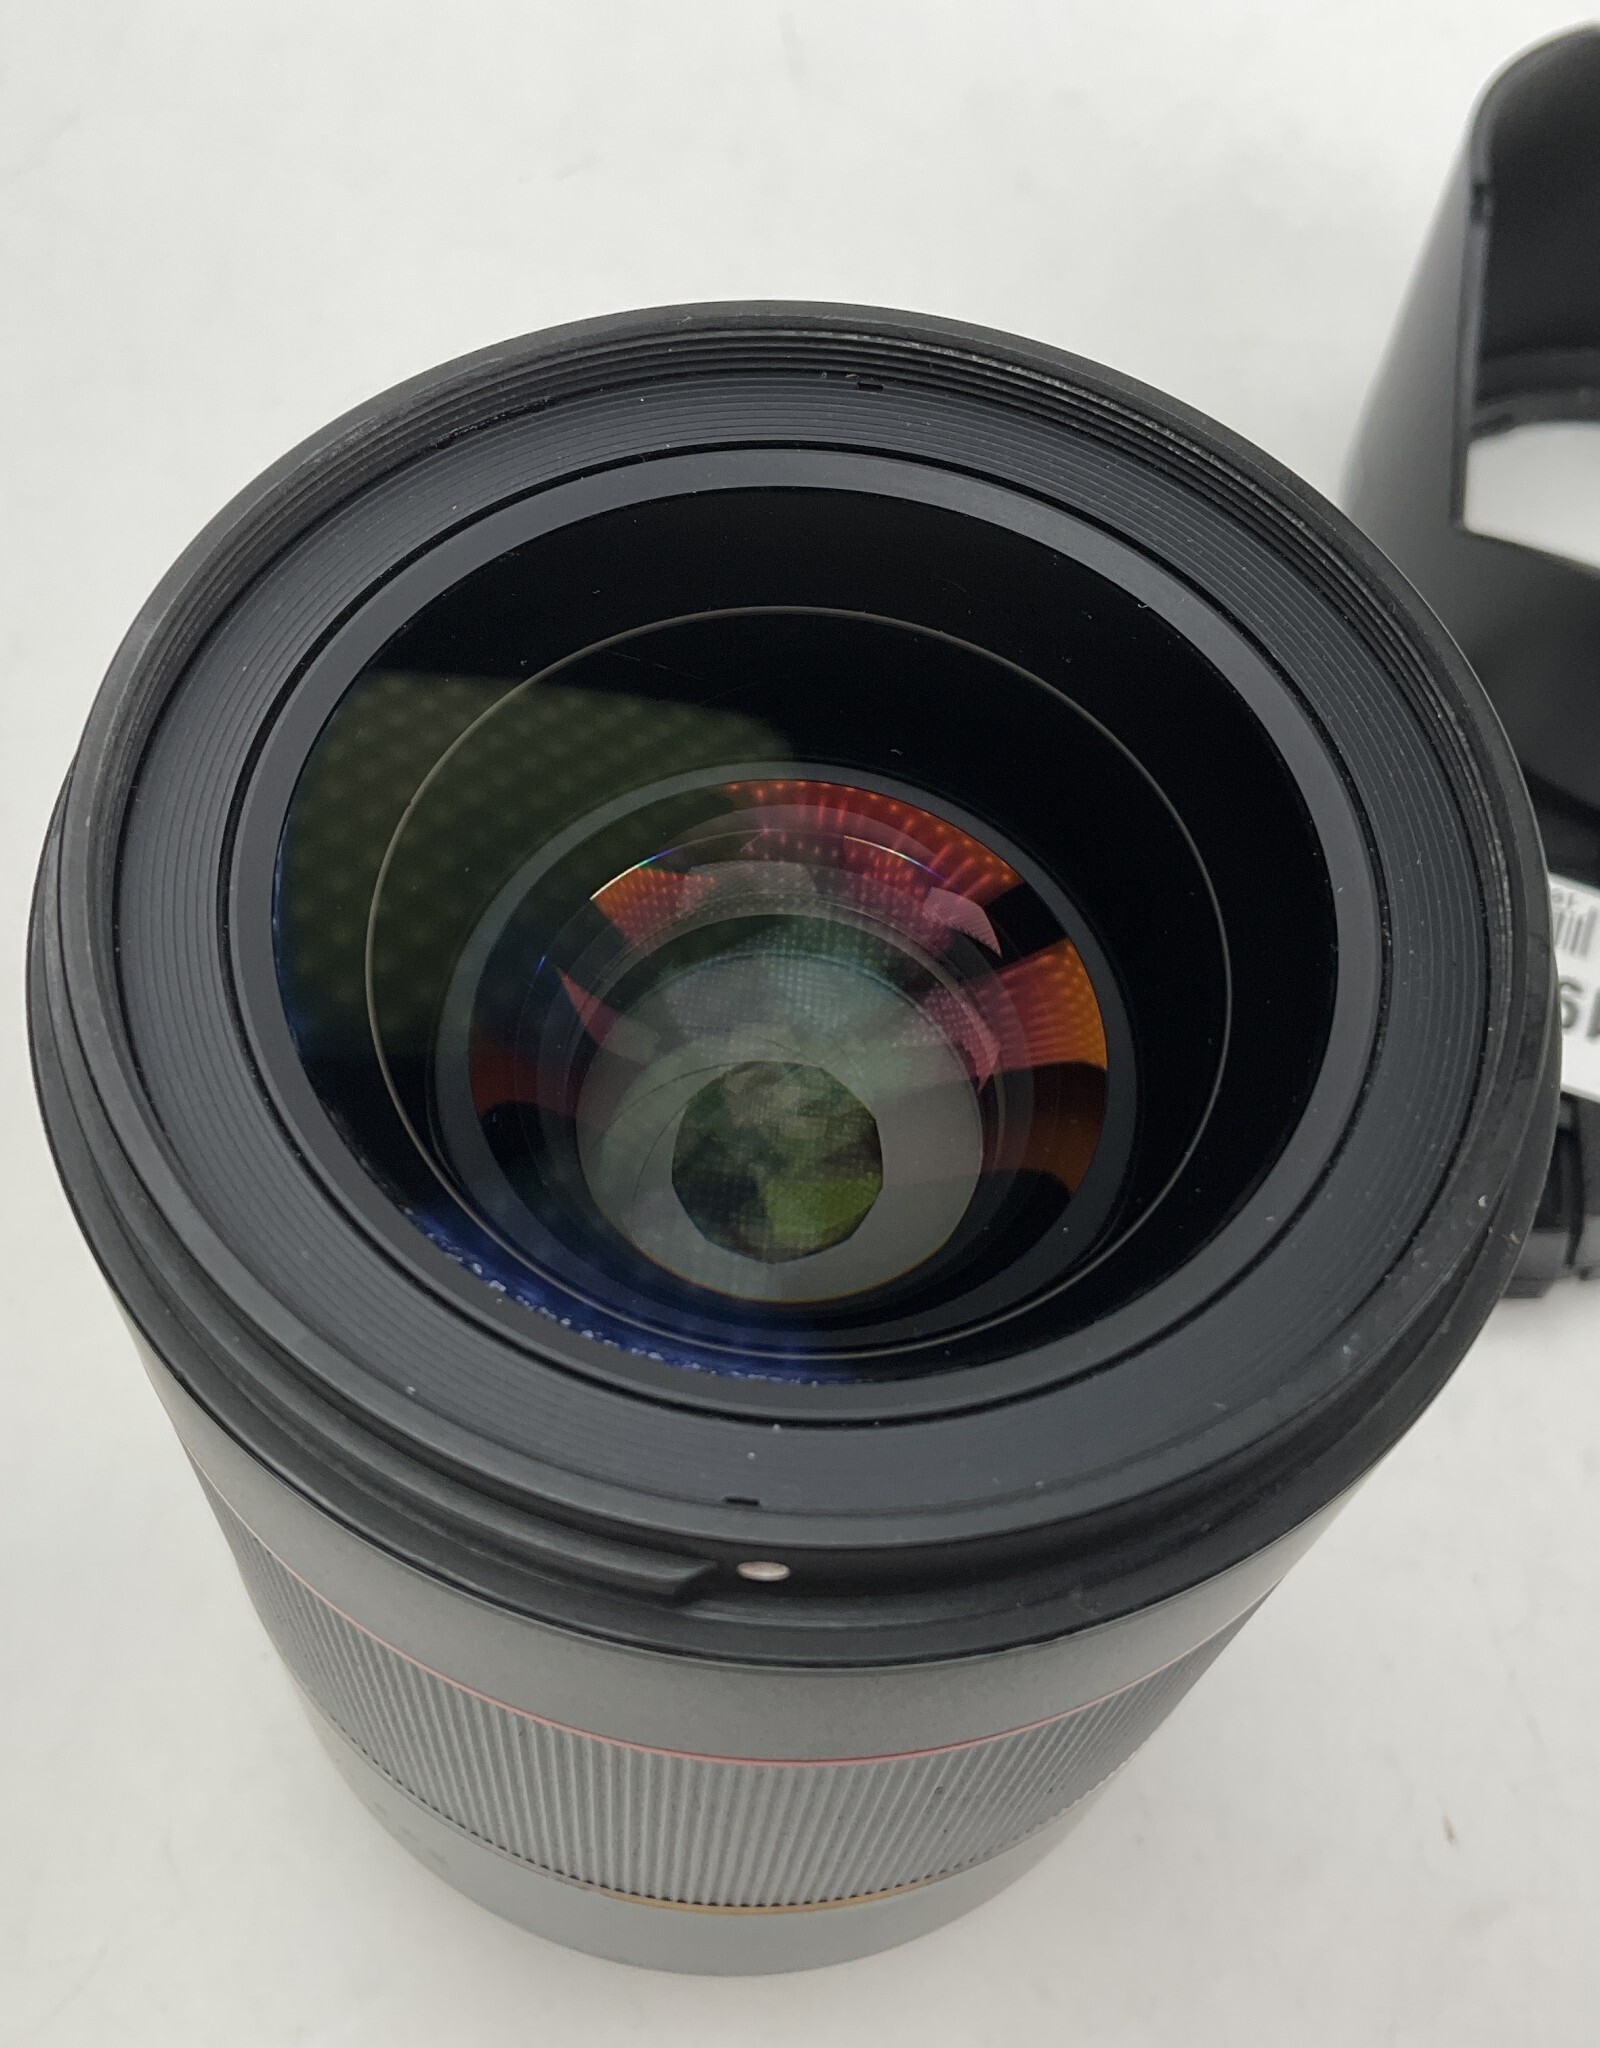 Samyang Samyang AF 35mm f1.4 FE Lens for Sony Used Good